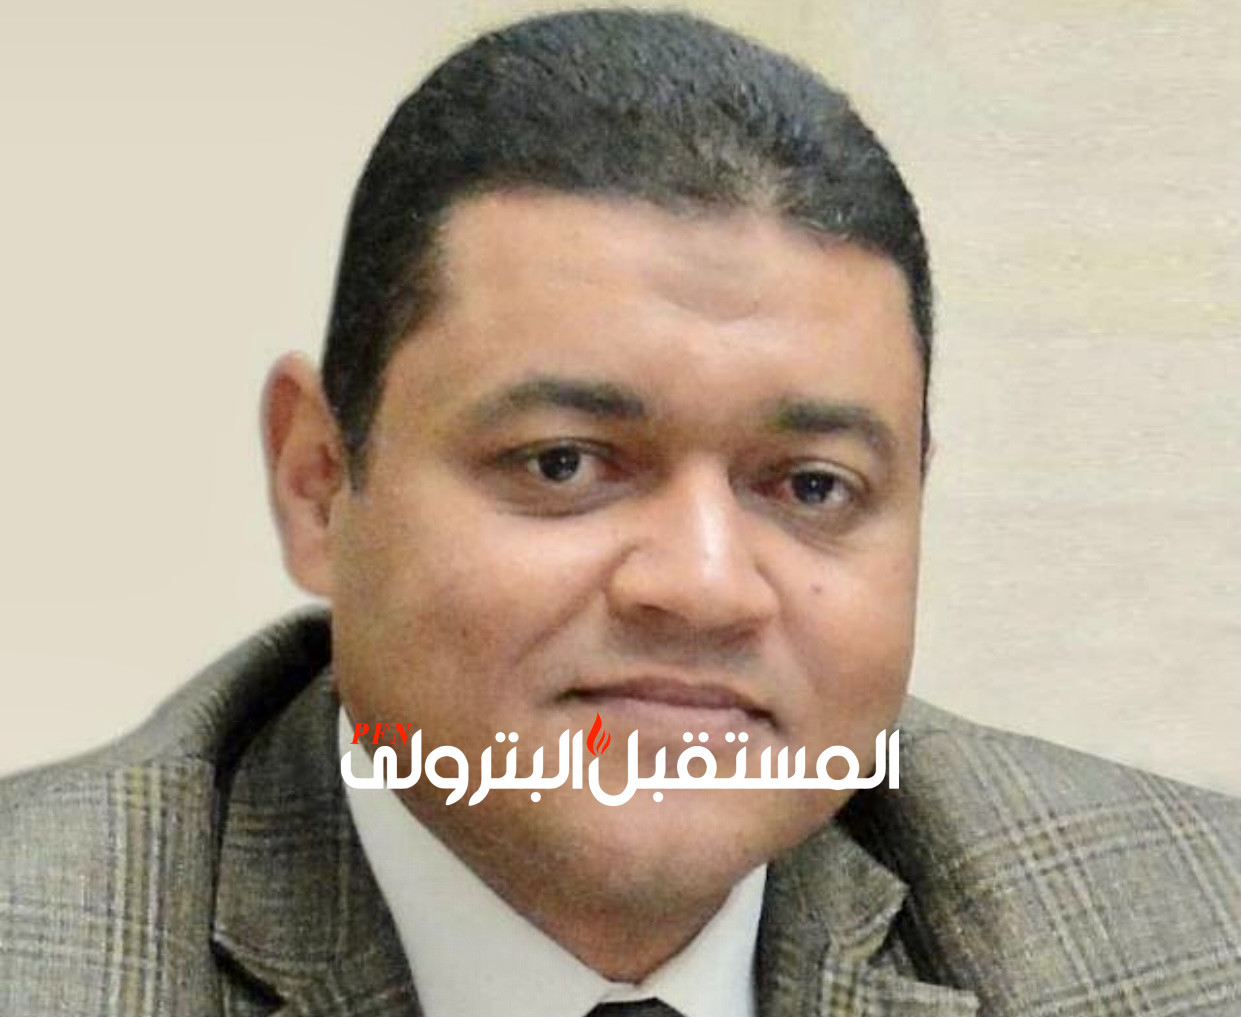 رئيس غاز مصر ل"المستقبل البترولي": لدينا مناطق كثيرة وصل اليها الغاز ولايزال المواطن يتمسك بأسطوانة البوتاجاز ونسعى لتغيير هذا المفهوم.